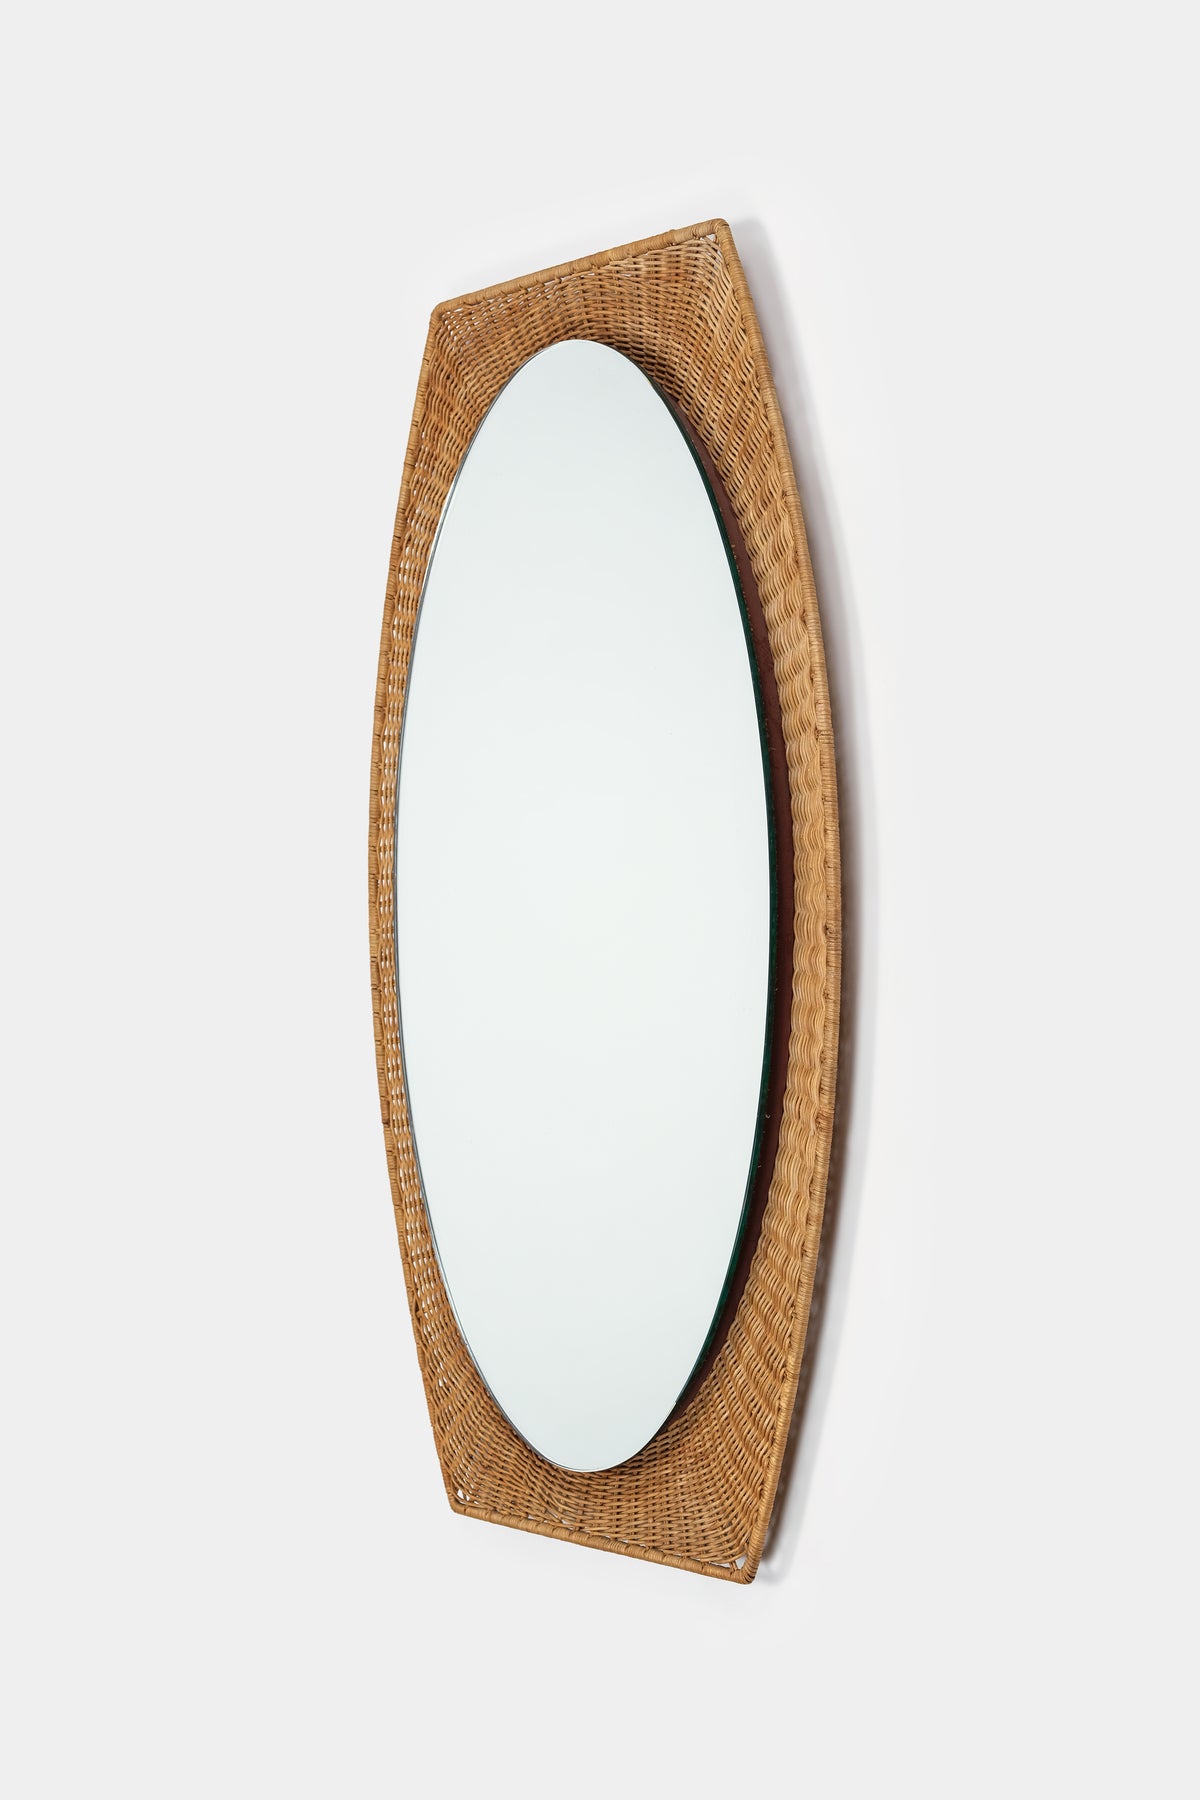 Mirror, Italy, 50s